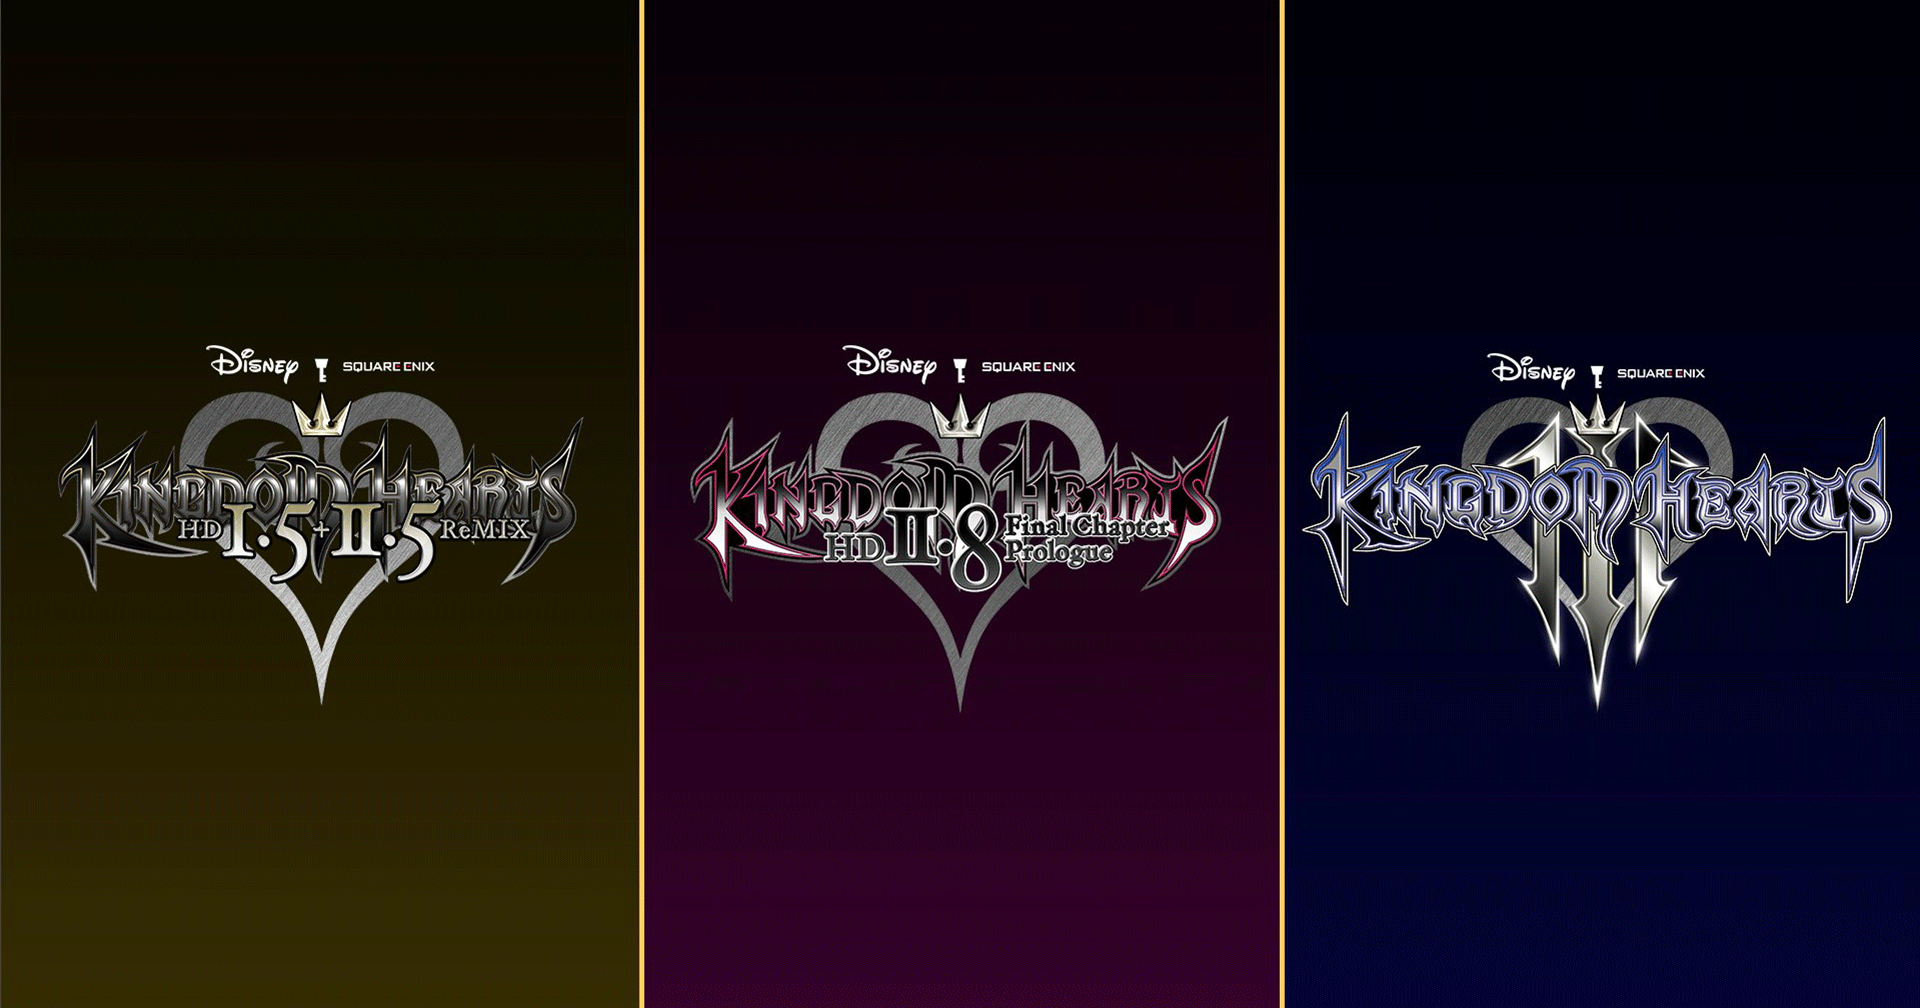 Kingdom Hearts ทั้ง 3 ภาค เตรียมลงให้กับ Nintendo Switch เร็ว ๆ นี้